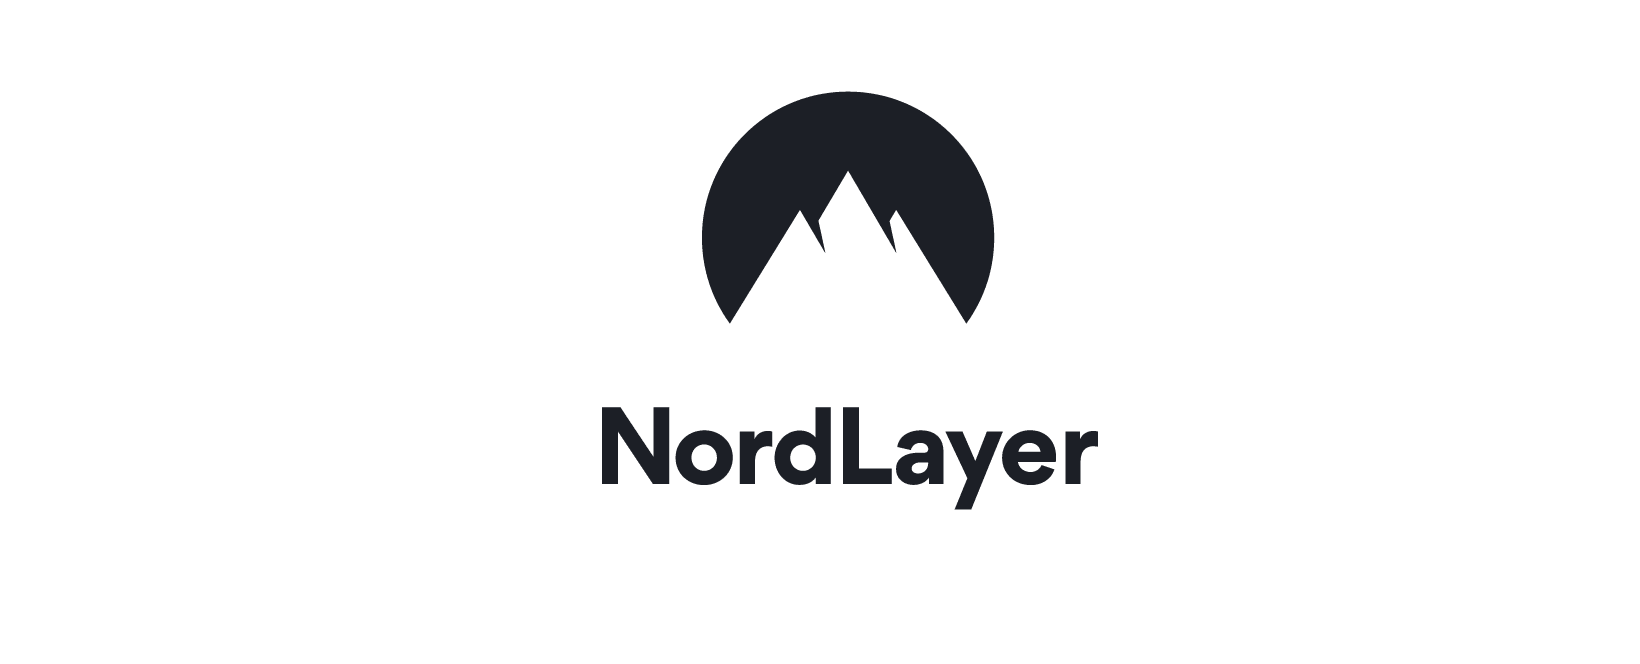 NordLayer Discount Code 2022